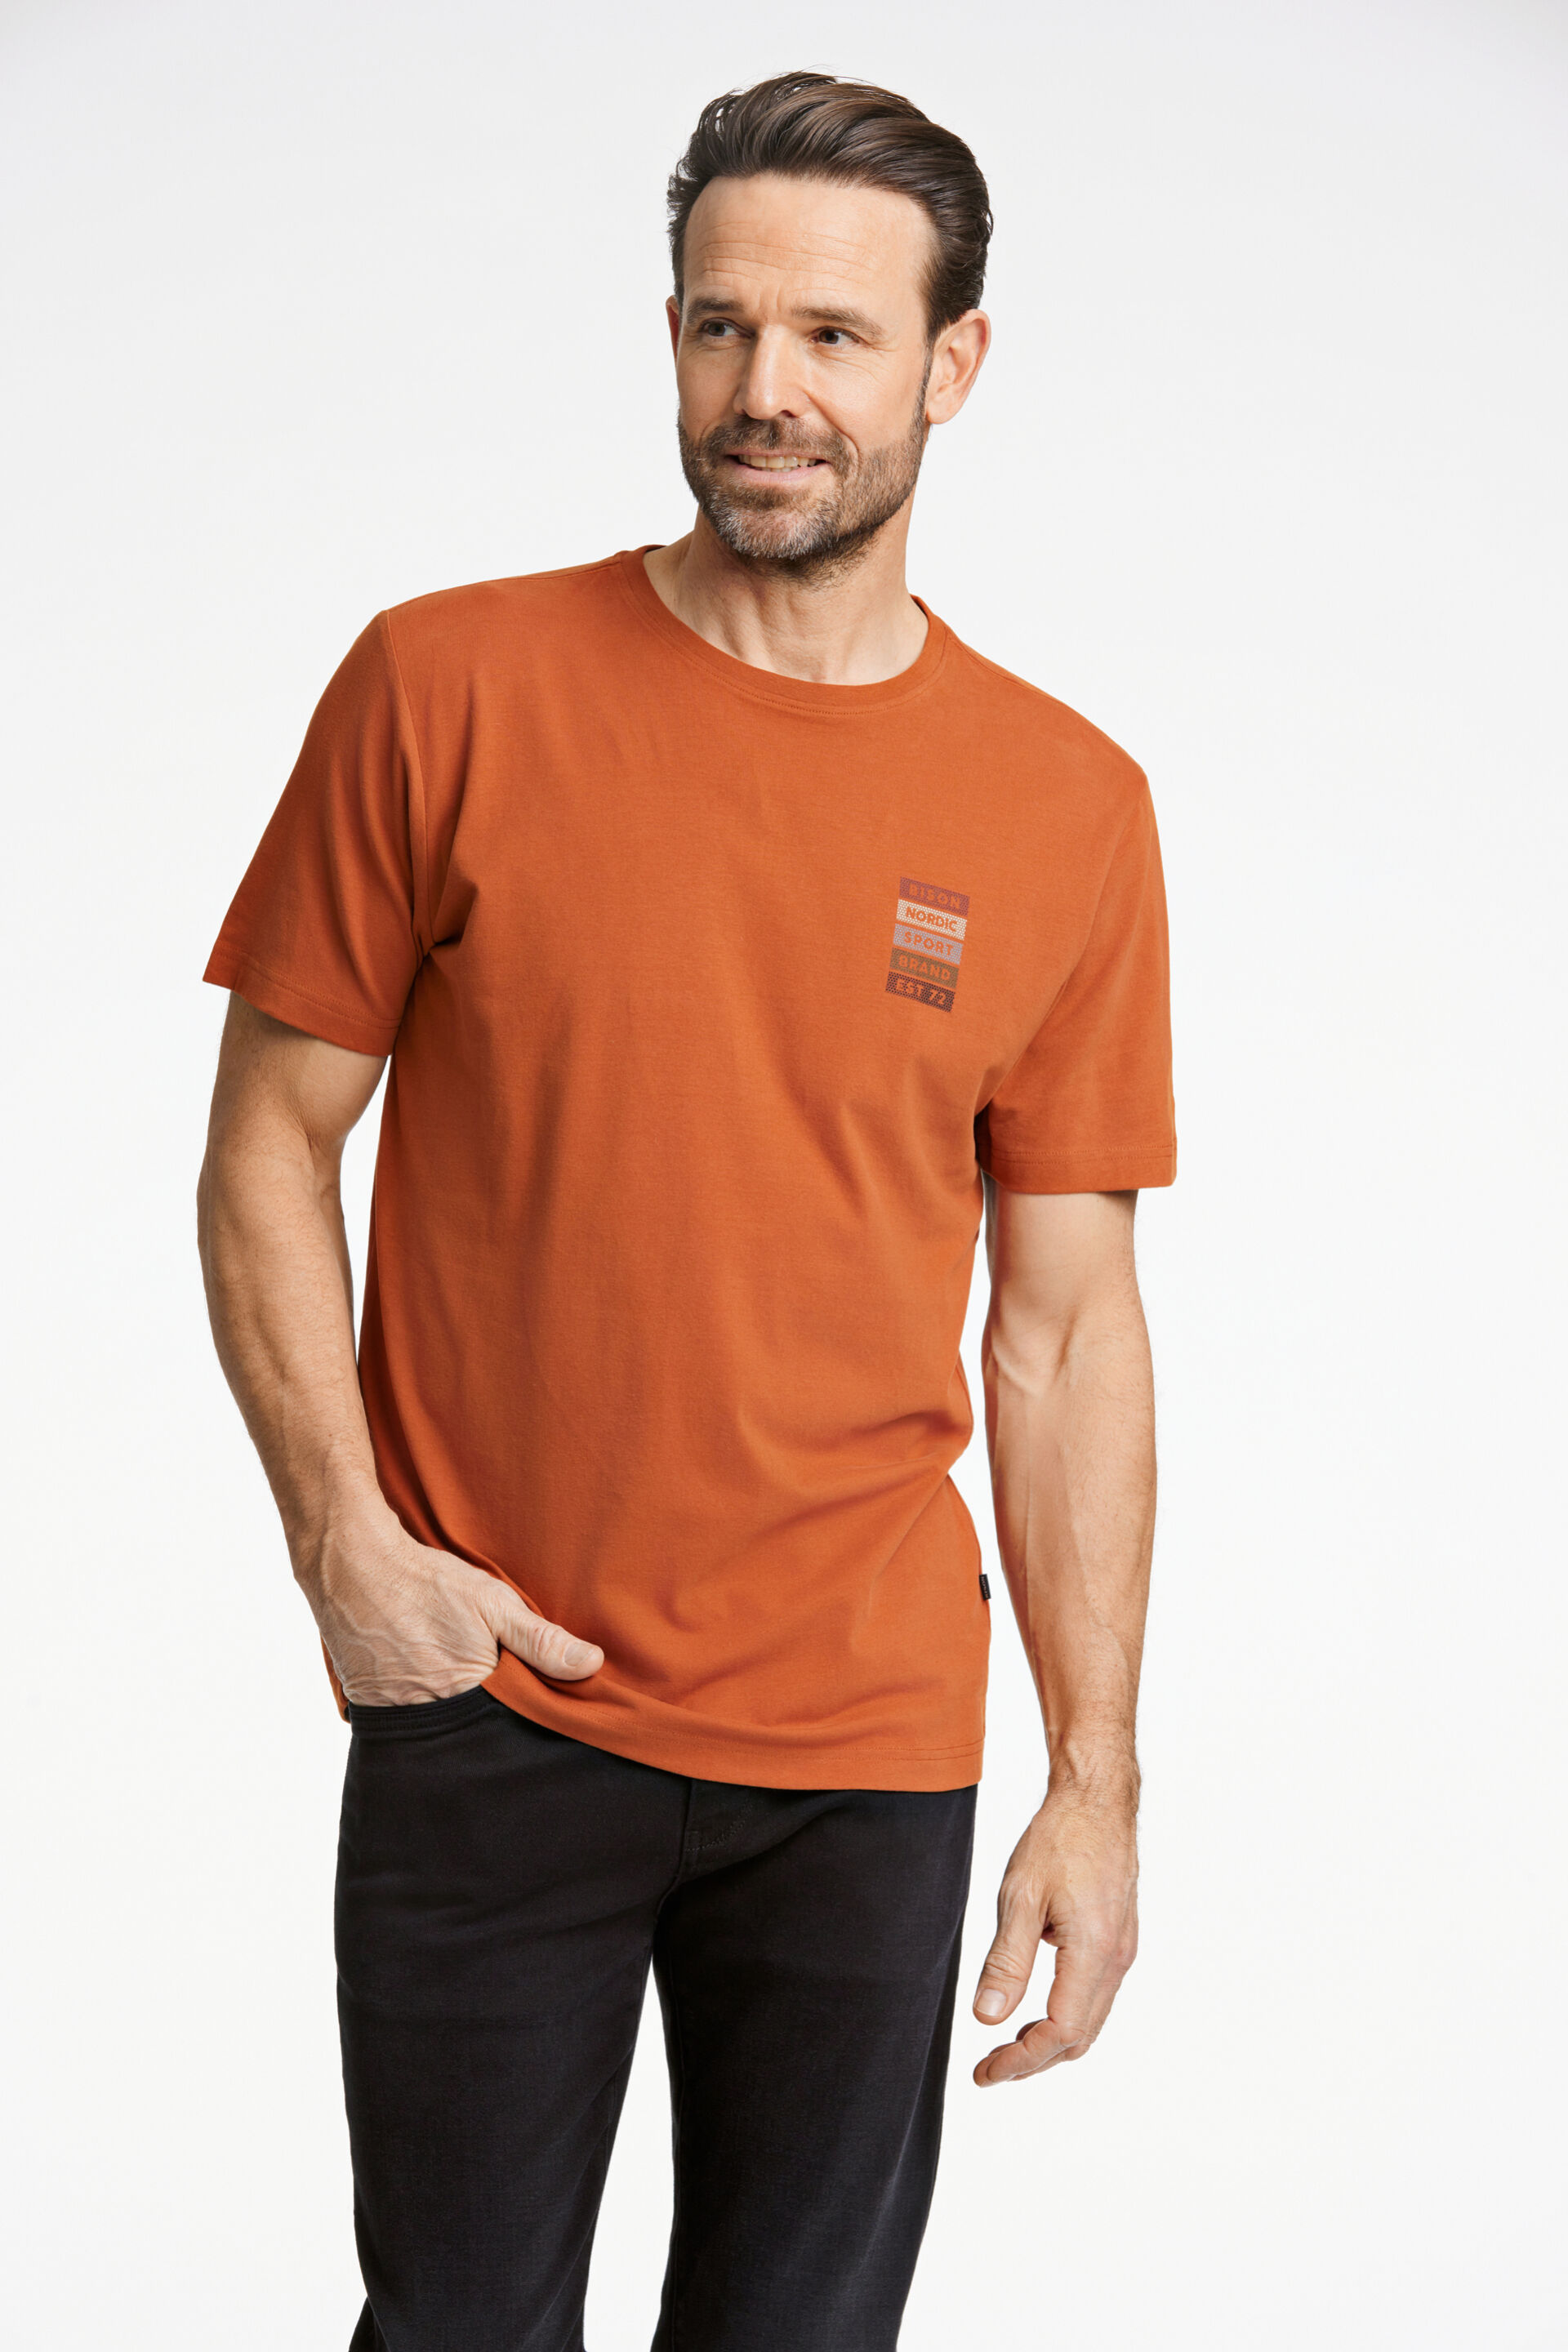 Bison  T-shirt Orange 80-400102